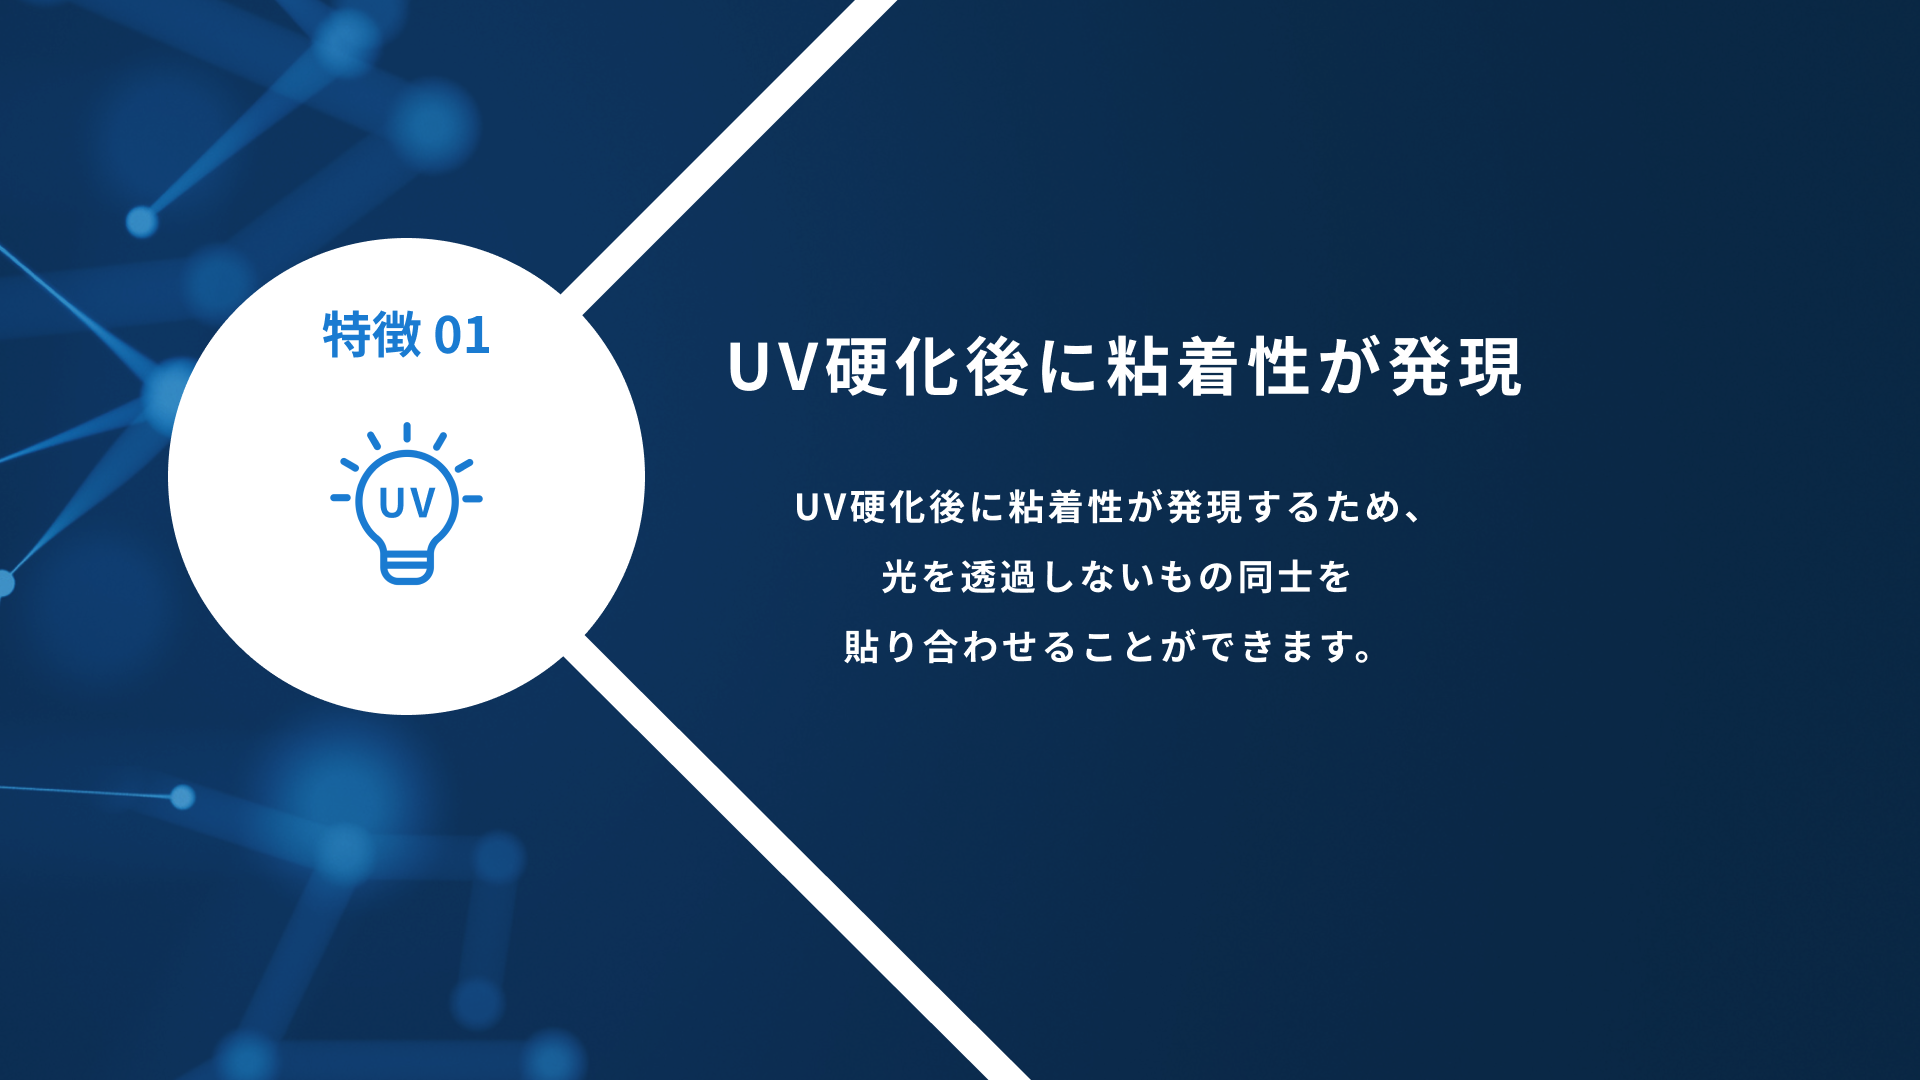 【スライド】UV硬化型粘着剤